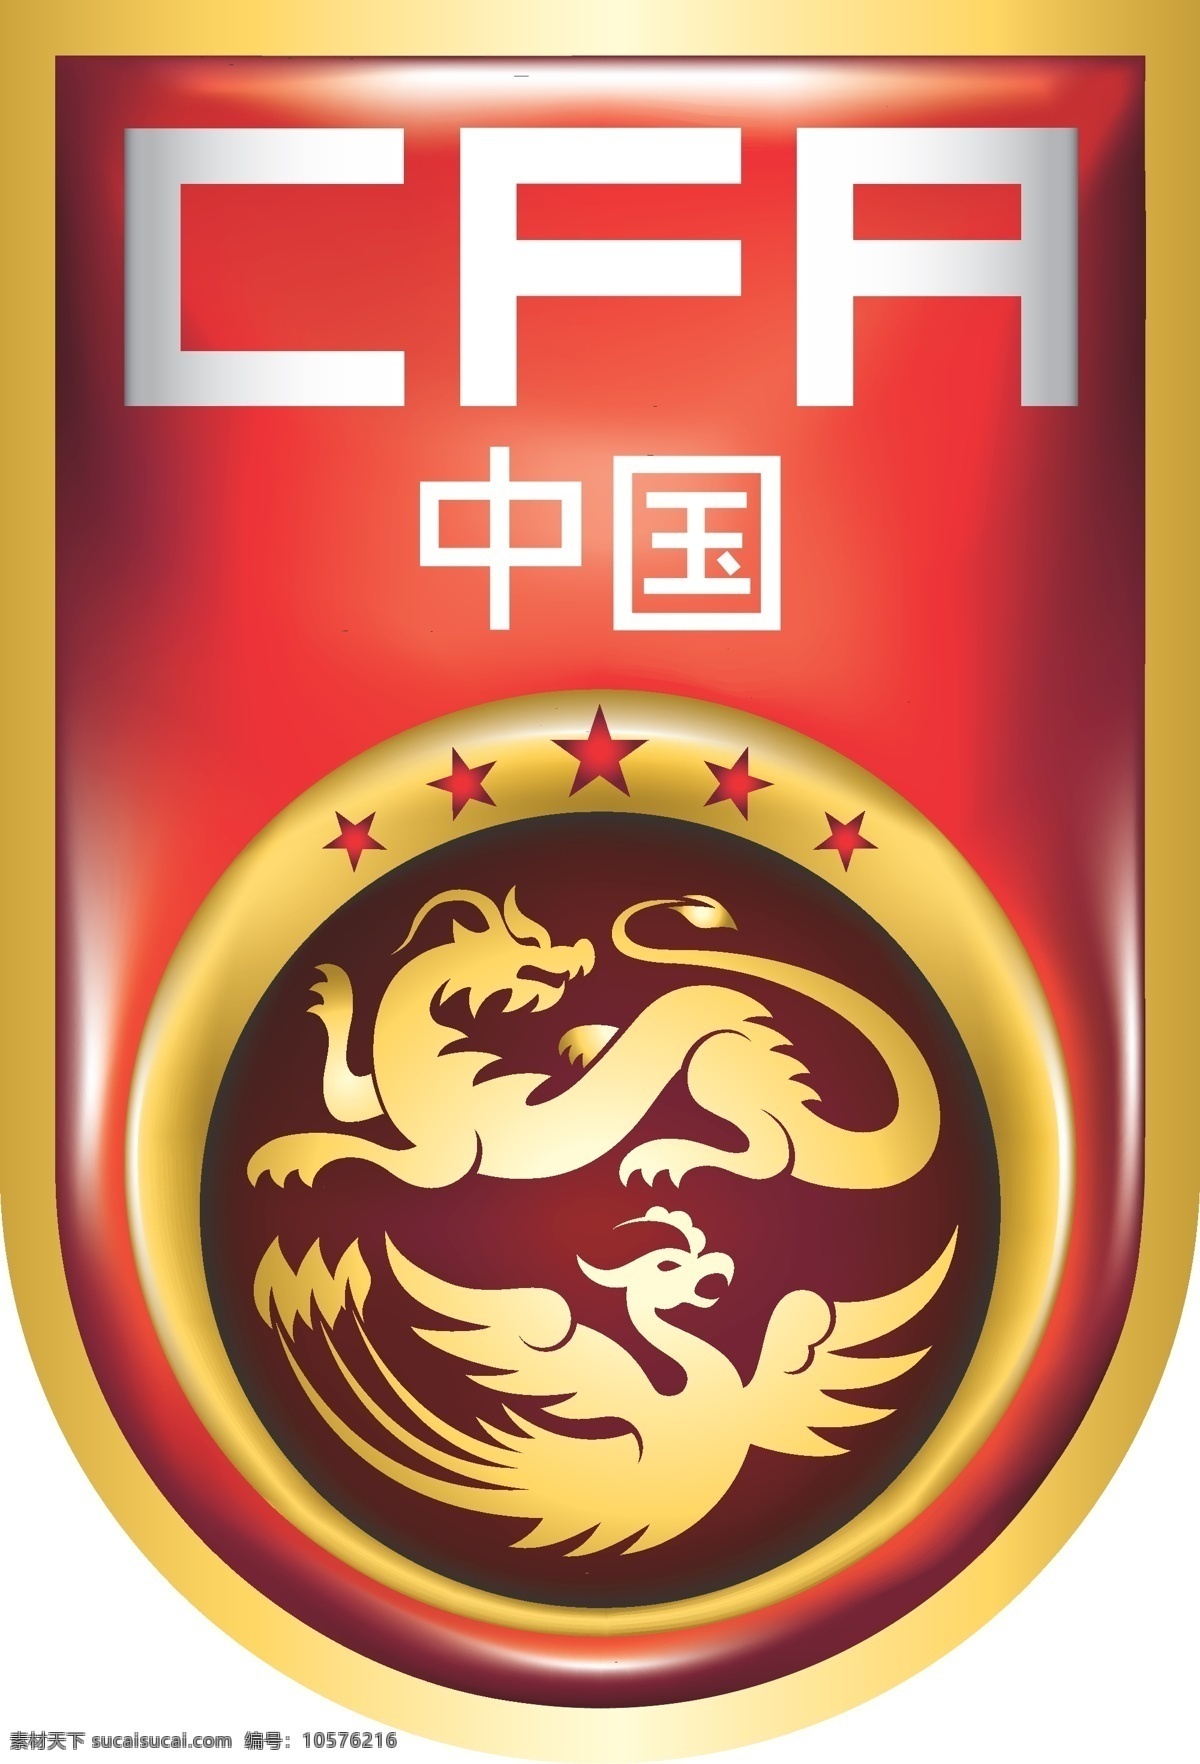 中国国家队 队 徽 中国 国家队 国足 中国之队 国家 标志图标 公共标识标志